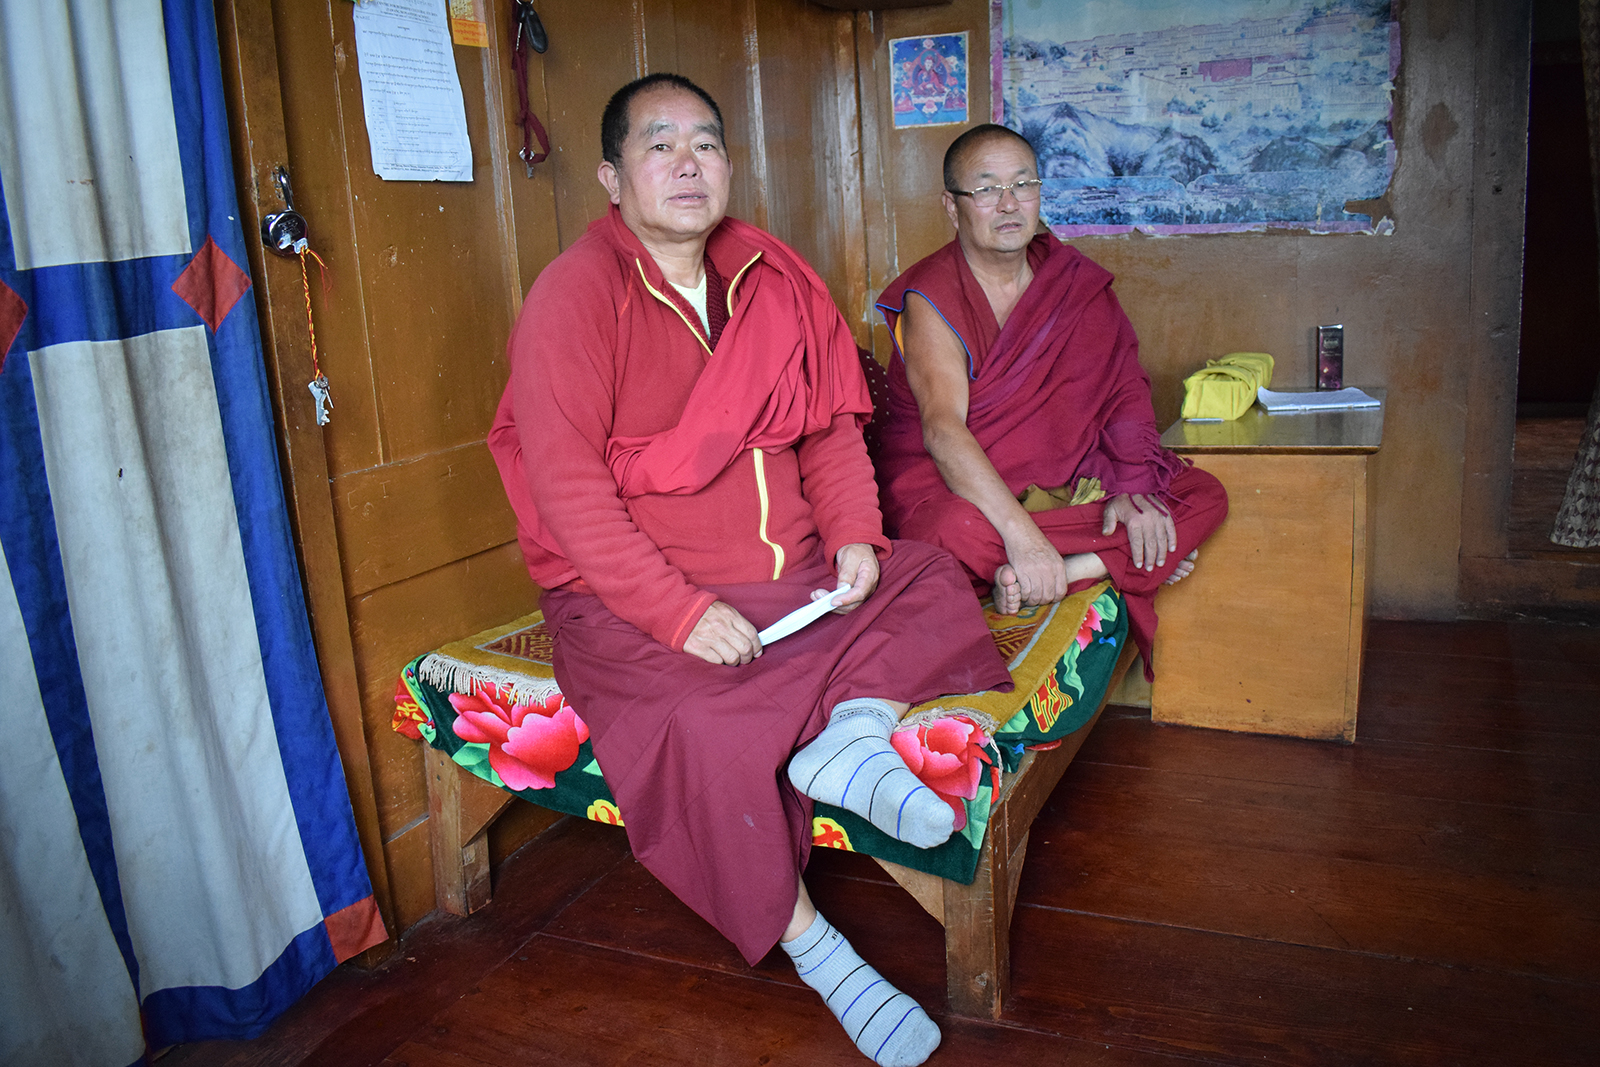 Buddhist monks Lama Jhampa Jha, left, and Lama Lopsang Phontso of the Save Mon Region Federation at the Tawang Monastery in Arunachal Pradesh, India. RNS photo by Priyadarshini Sen